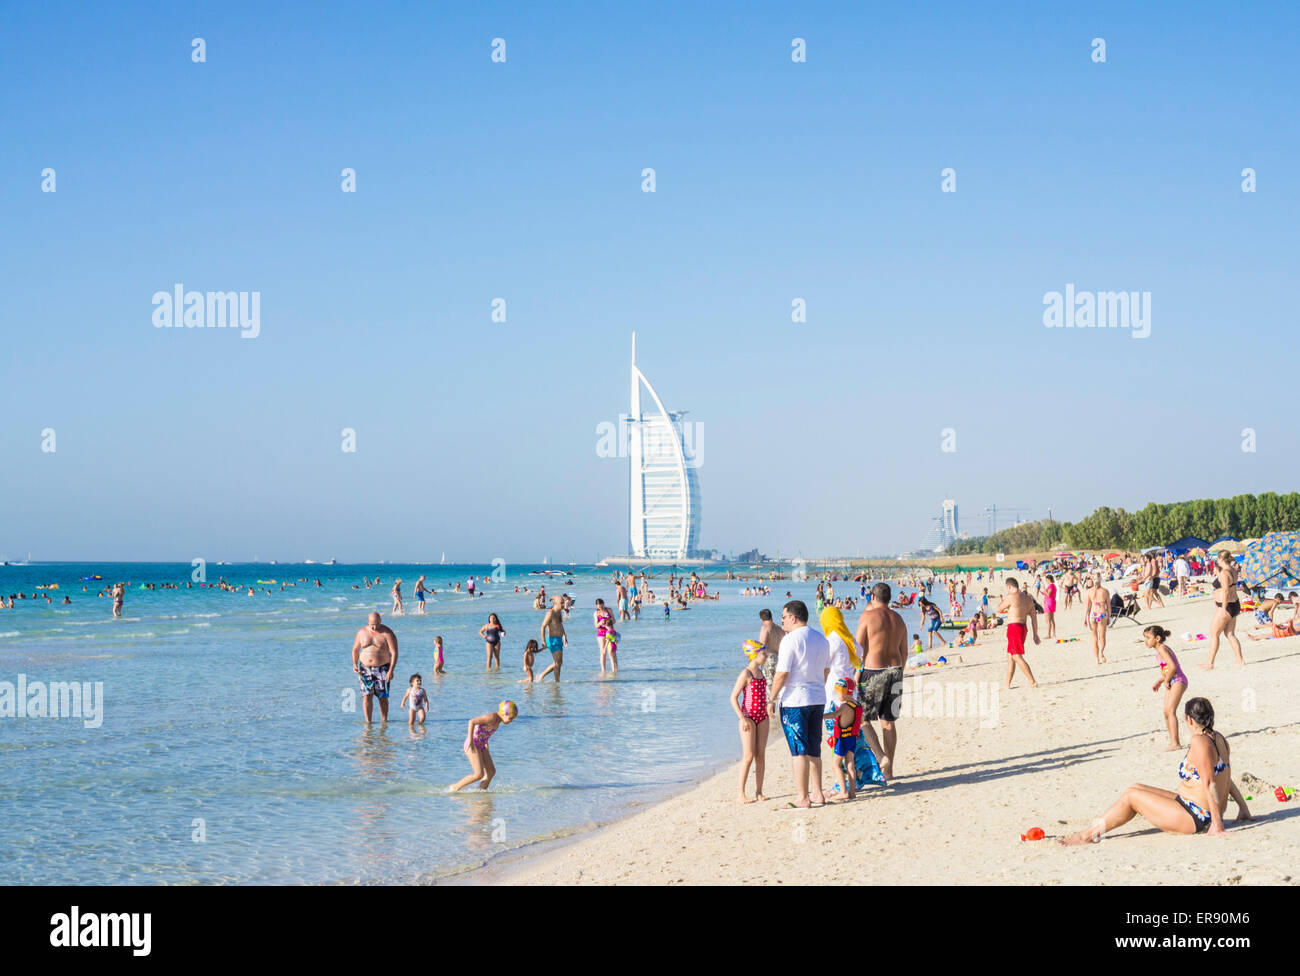 Urlauber am öffentlichen Dubai Strand in der Nähe von Burj Hotel al Arab, Dubai, Vereinigte Arabische Emirate, Vereinigte Arabische Emirate, Naher Osten Stockfoto